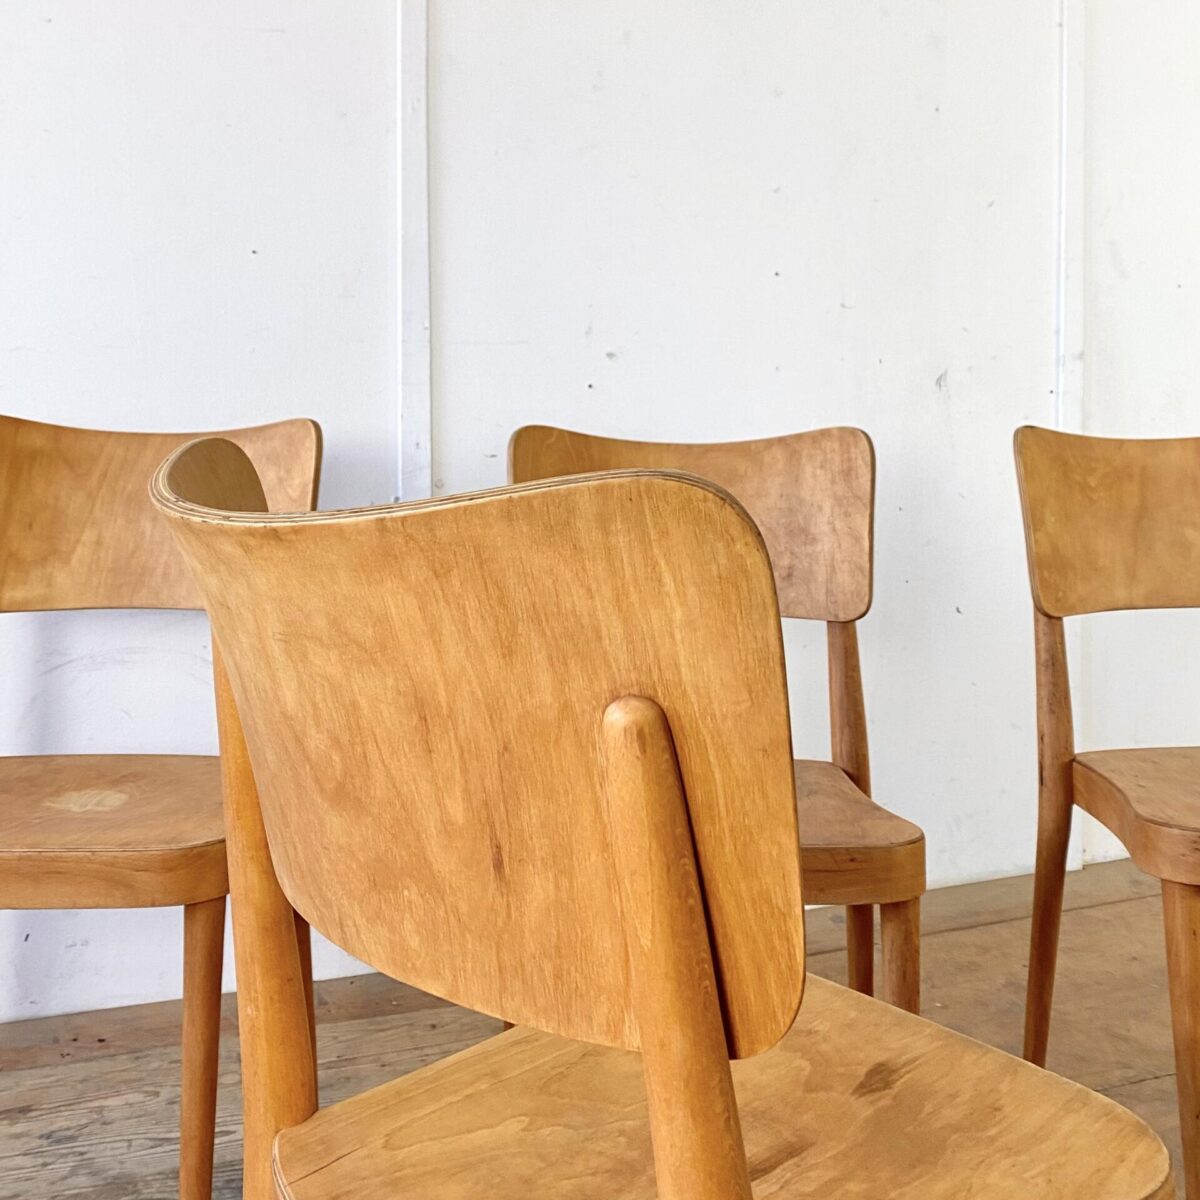 Deuxieme.shop Max bill Stühle. 4er Set Horgen Glarus Stühle von 1958. Die Stühle sind in stabilem restaurierten Zustand, die Holz Oberflächen sind geschliffen und geölt. Sitz und Lehne sind aus Sperrholz formverleimt, die restlichen Teile aus Buche Vollholz Dampfgebogen. Die konischen Rundbeine und die Rückenlehne wurden später beim Max Bill Kreuzzargen Stuhl wieder aufgegriffen. Die Stühle sind stapelbar, und werden heute noch in ähnlicher Form ähnlich produziert, mit dem Namen Stapel 1-680. 